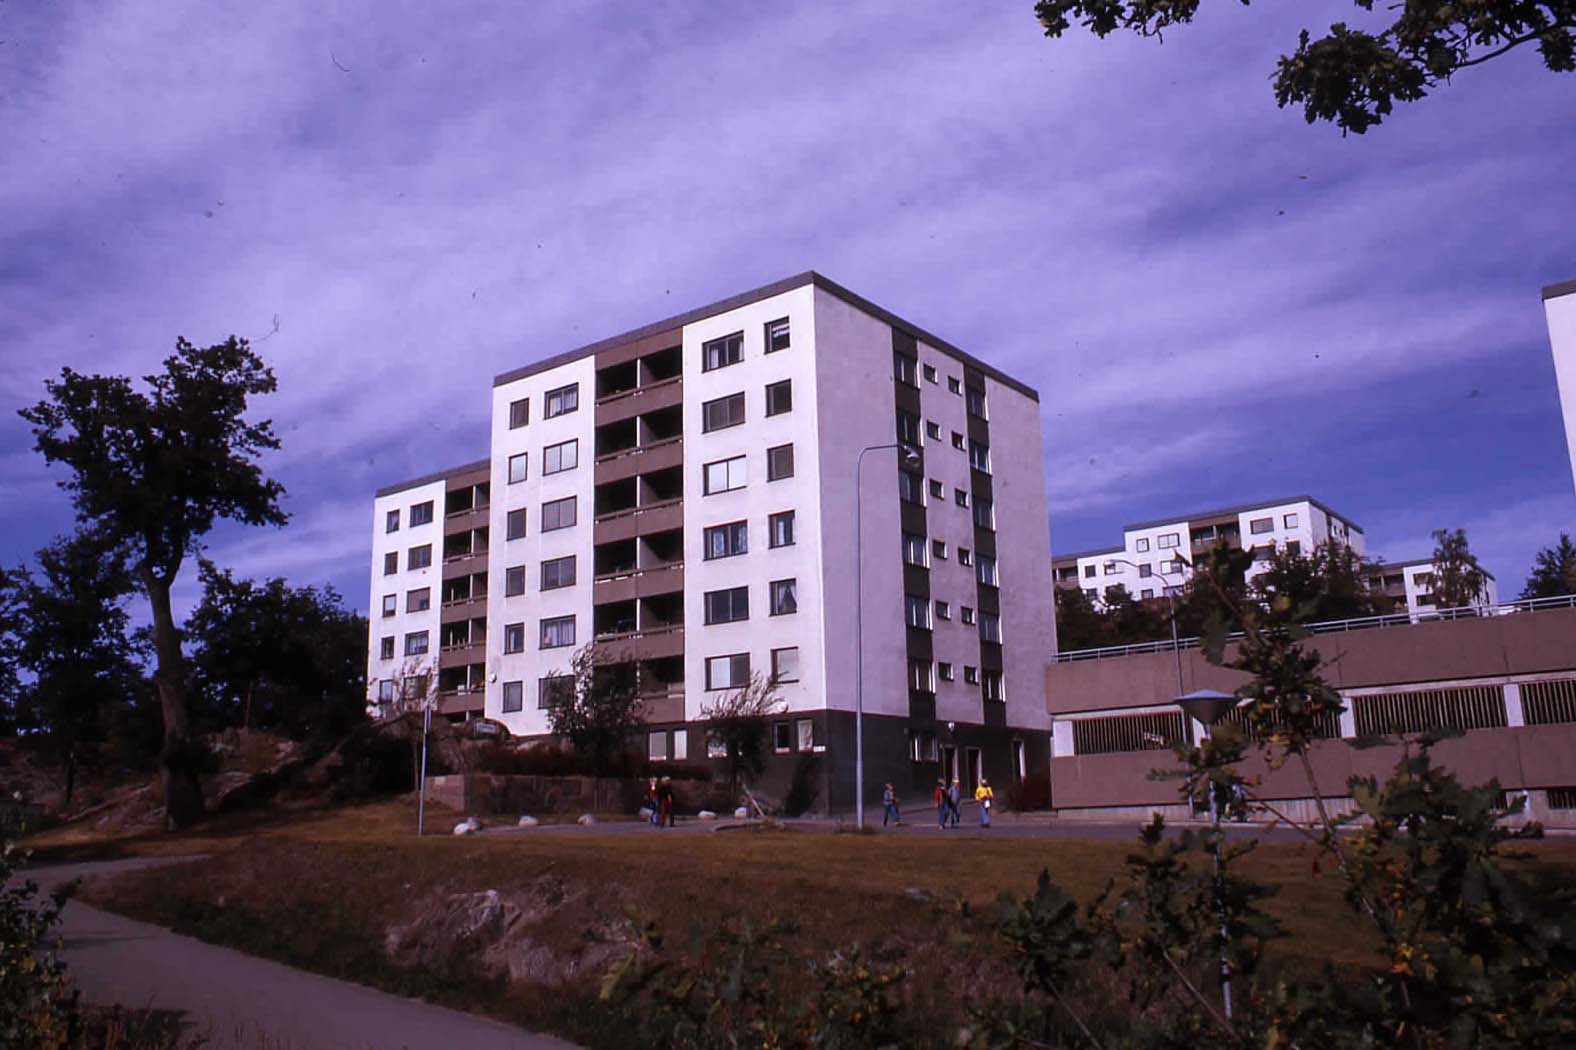 Södra Vårberg, 1973